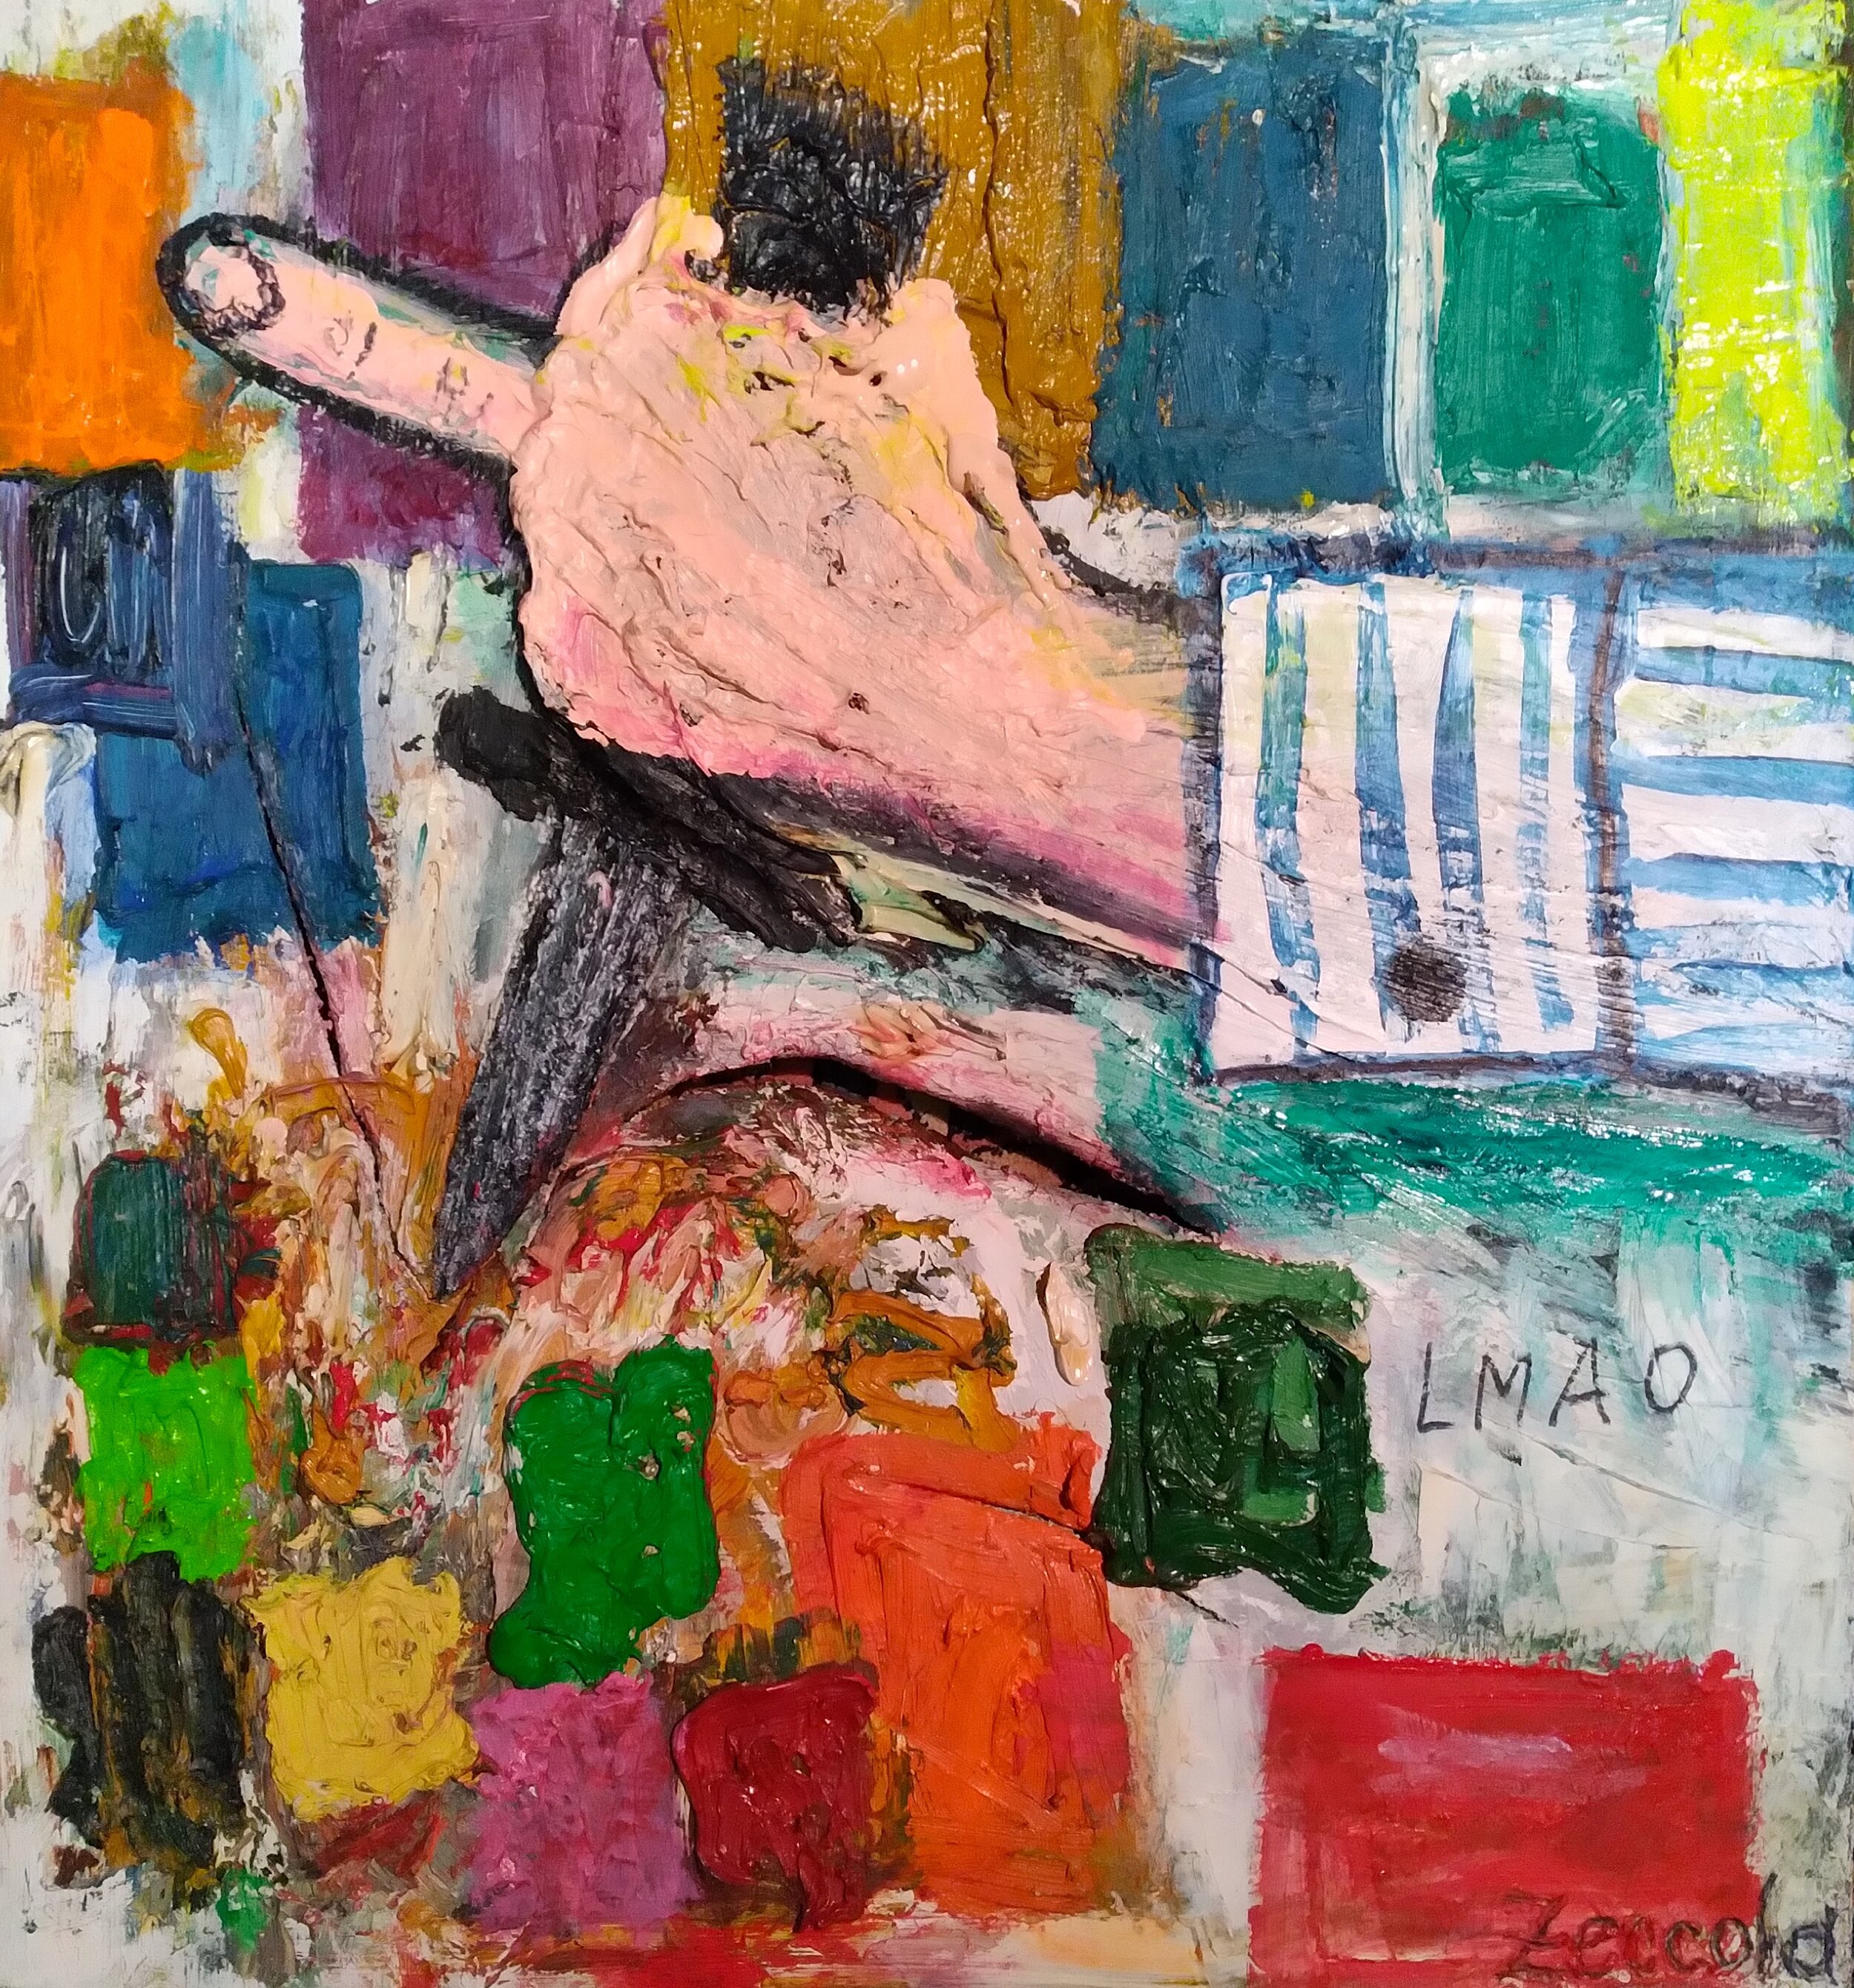 LMAO, 2010. Oil, acrylic, knife on canvas. 38” x 36”.